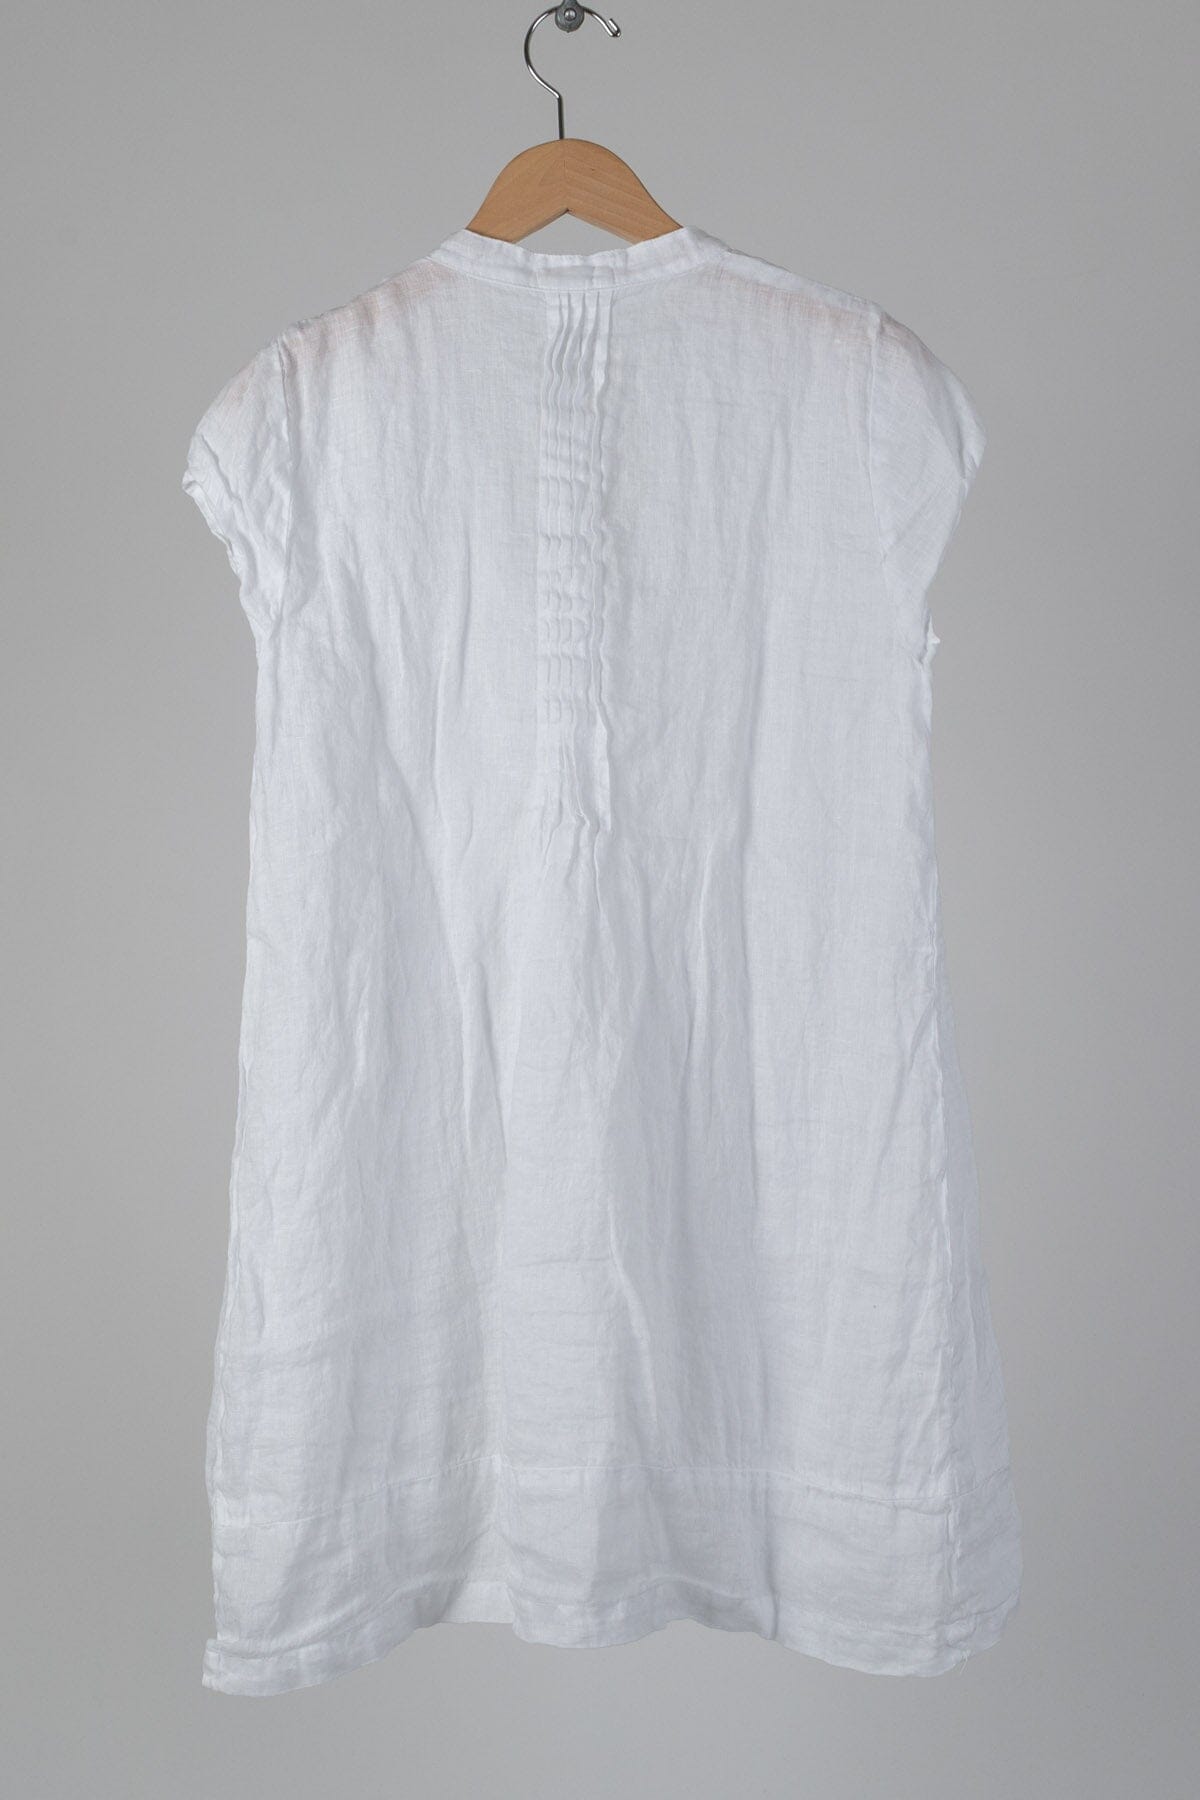 Regina Cap Sleeve - Linen S10 - Linen Shirt/Top/Tunic CP Shades 